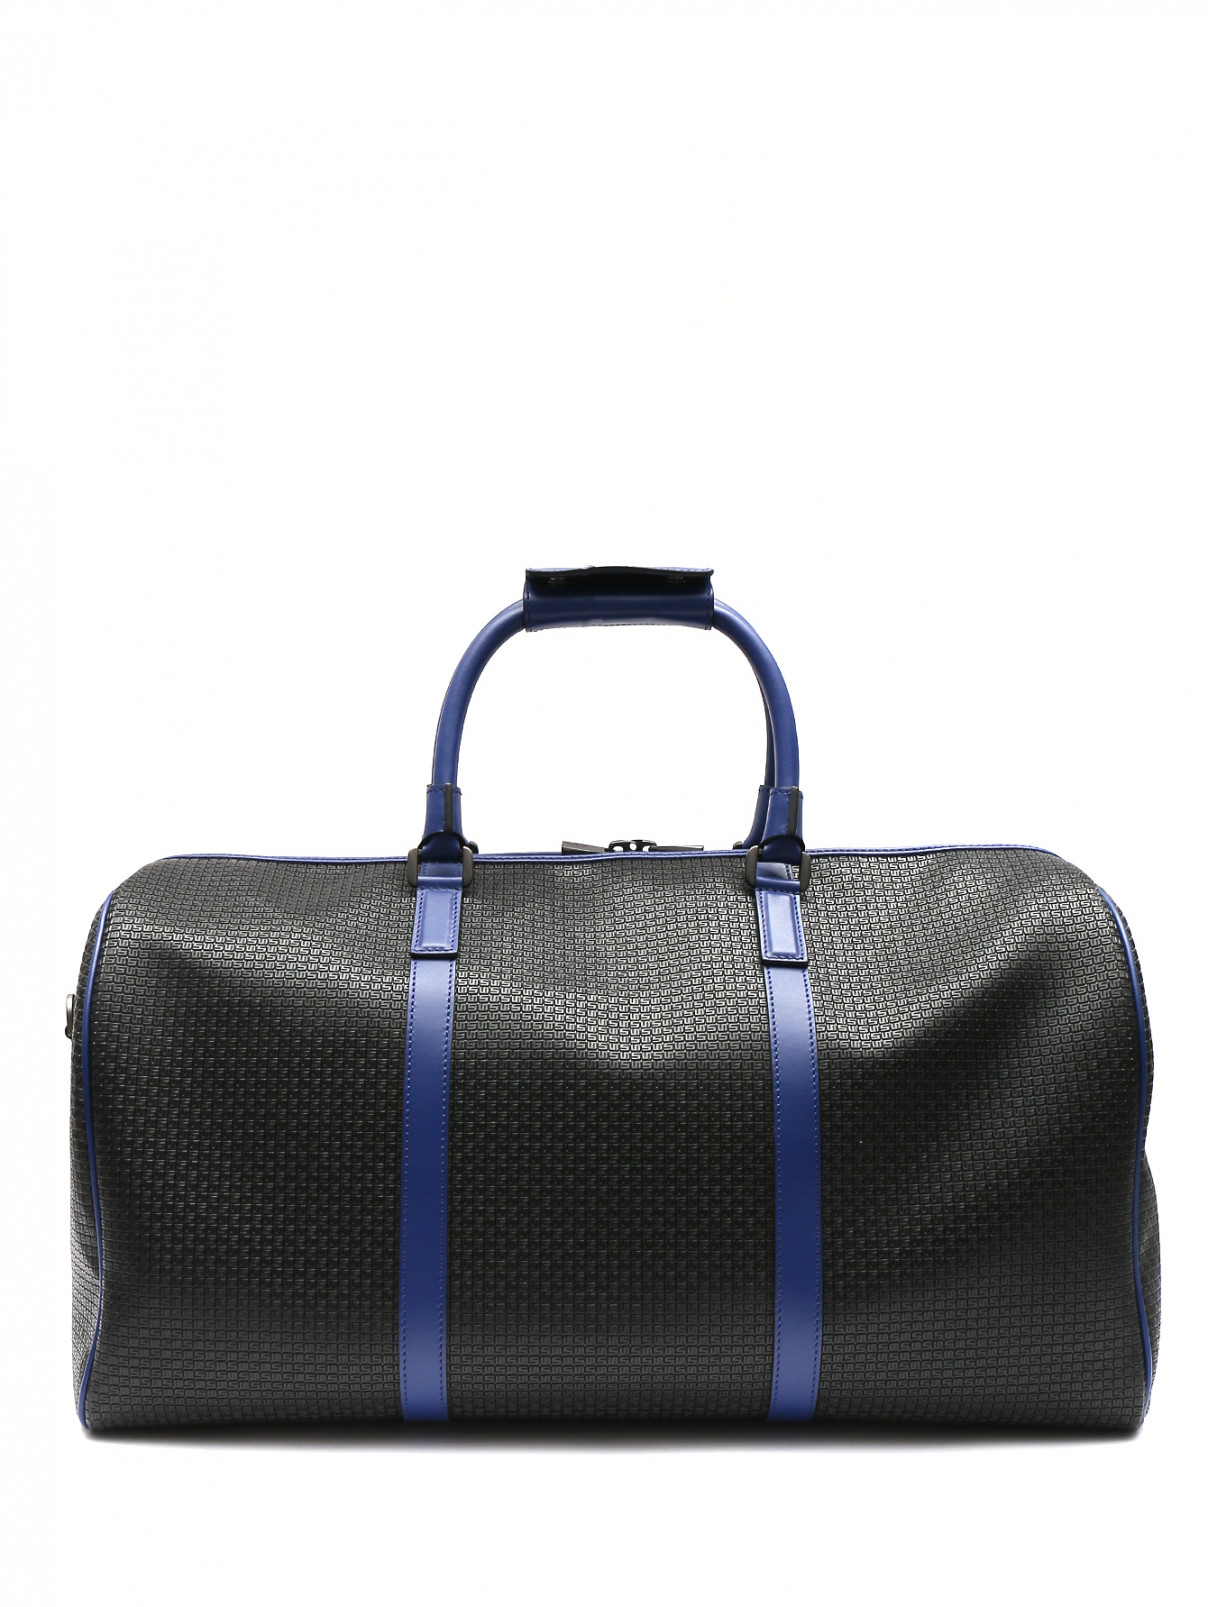 Дорожная сумка из кожи со съемным плечевым ремнем Serapian Milano  –  Общий вид  – Цвет:  Черный